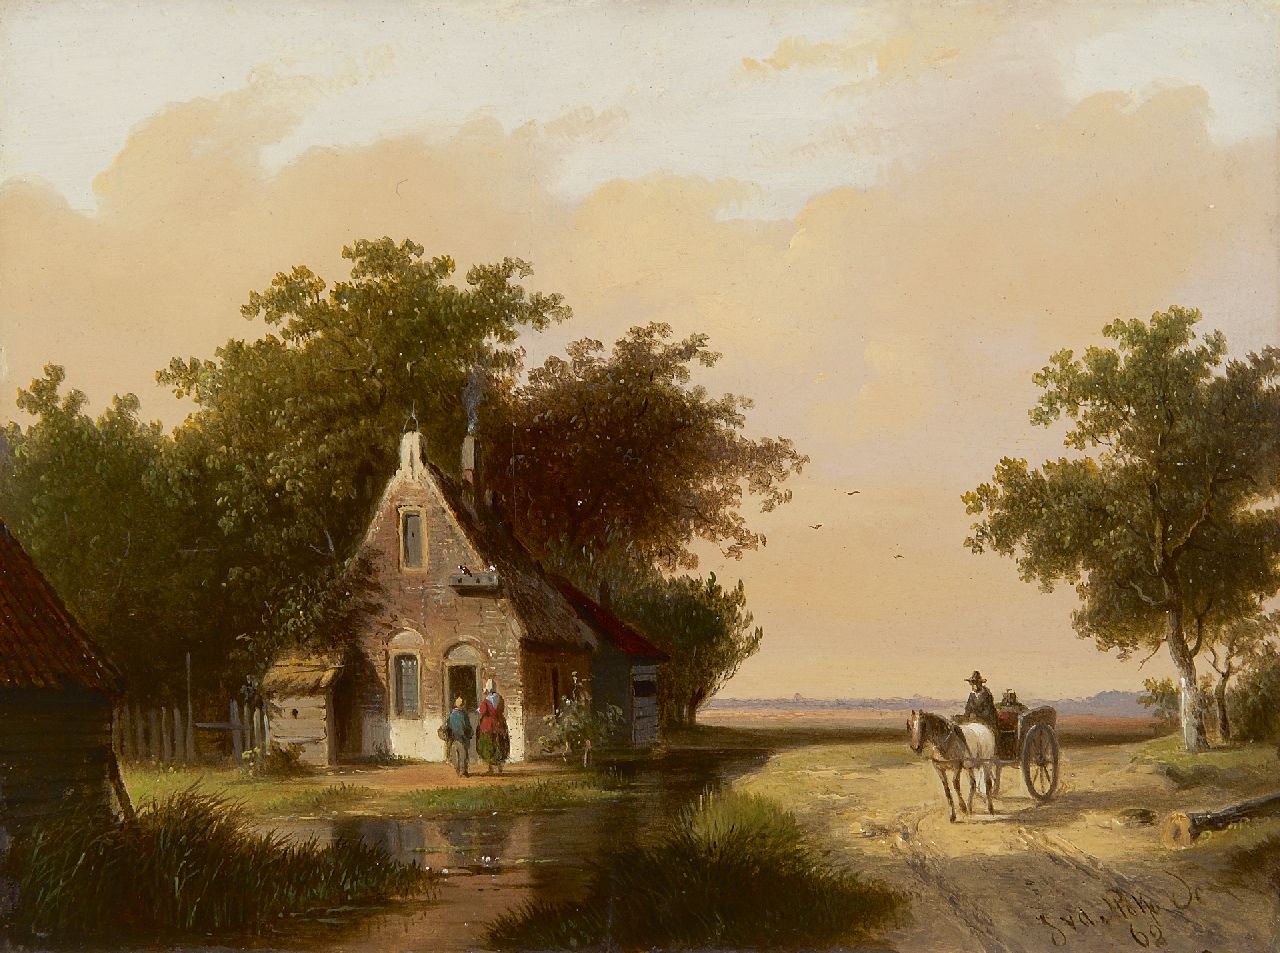 Stok J. van der | Jacobus van der Stok, Landschap met figuren bij een huisje, olieverf op paneel 18,9 x 25,3 cm, gesigneerd rechtsonder en gedateerd '62